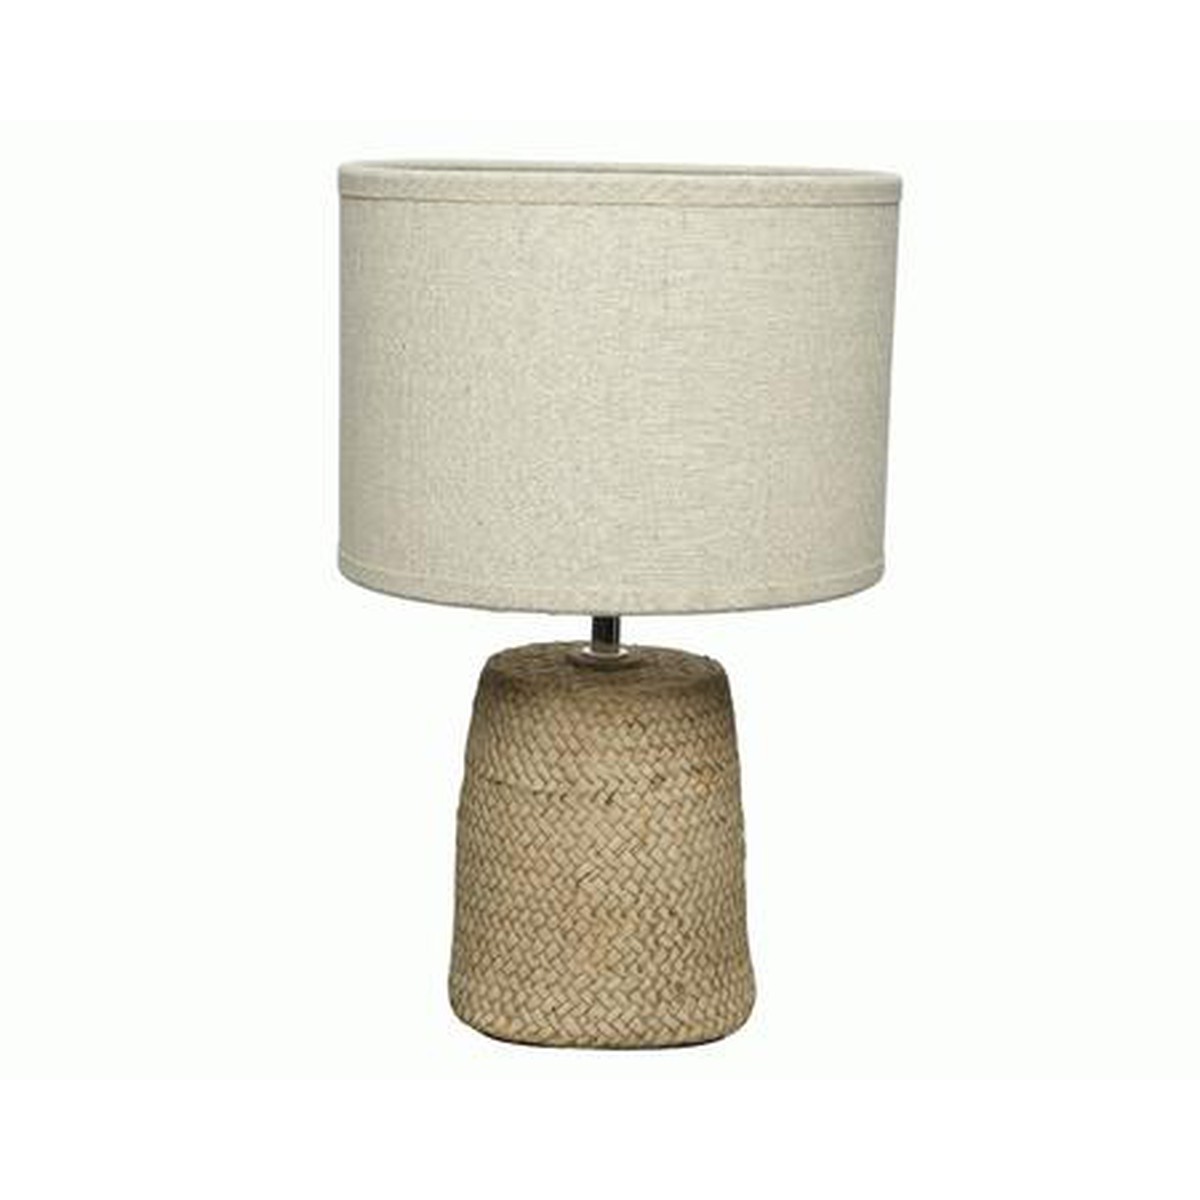   Lampe beton struture Bambou avec abat-jour en lin. Douille E27. dia23x36.5cm  dia23x36.5cm